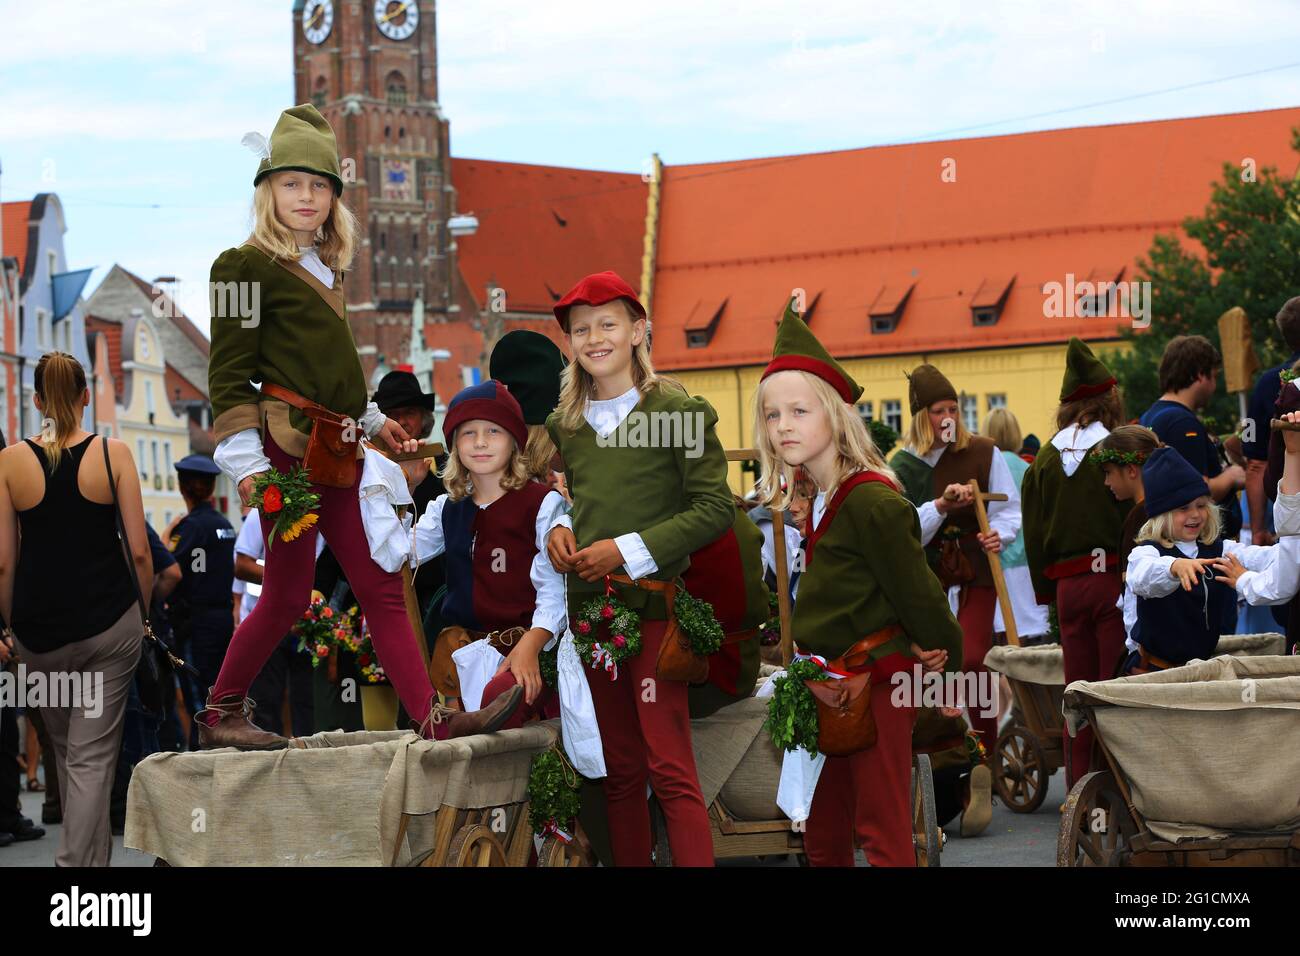 Landshuter Hochzeit oder Landshuter Fürstenhochzeit ist das größte Mittelalterfest Europas Foto Stock